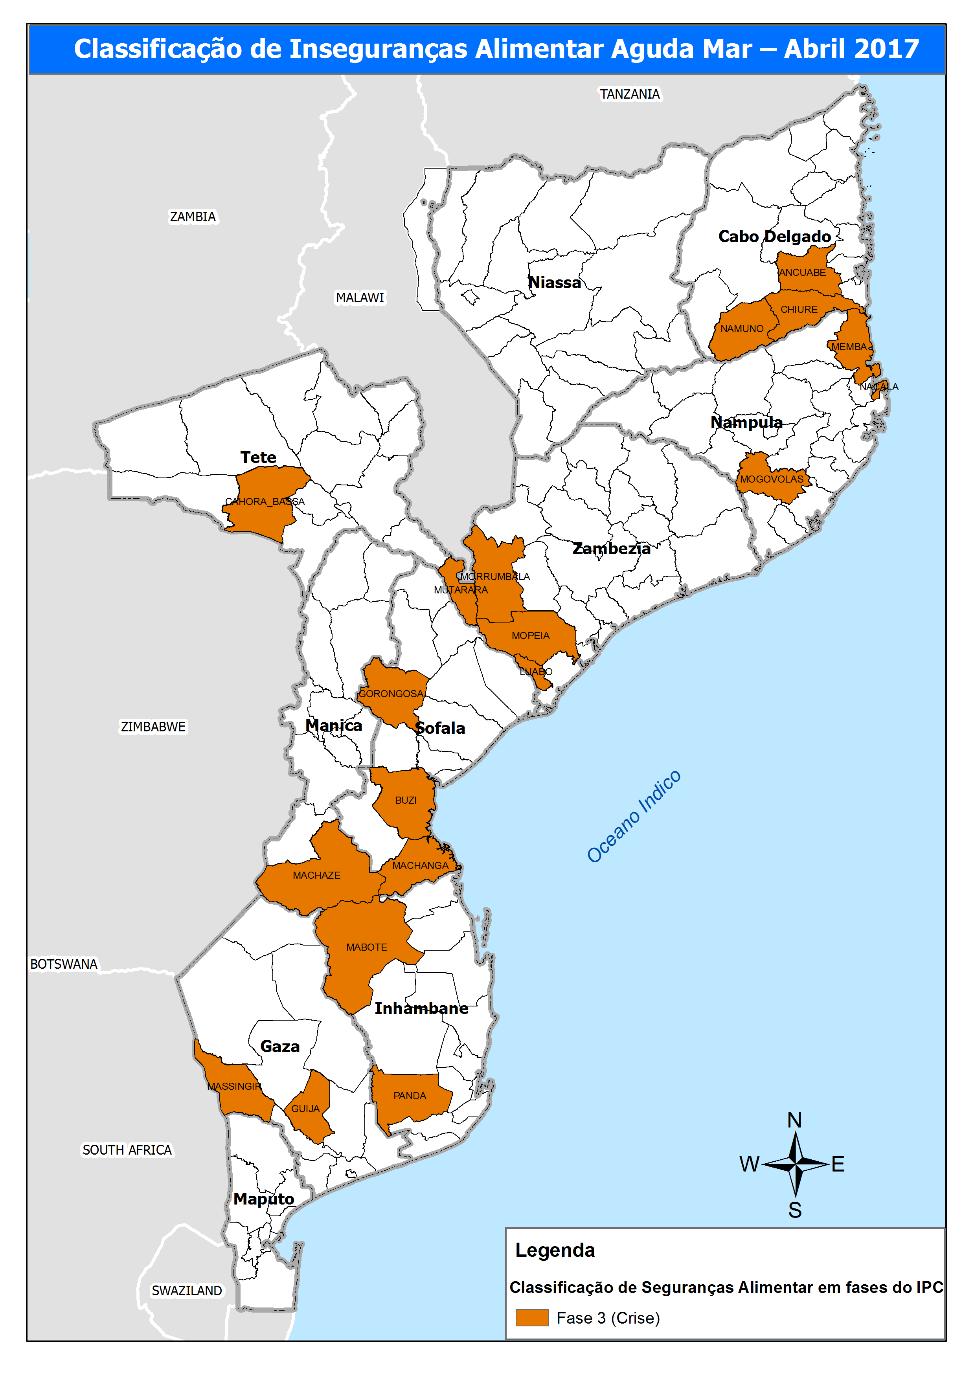 No período de Março a Abril 2017, todos os distritos foram classificados em fase de "Crise" de insegurança alimentar aguda (fase 3 do IPC-INSA).